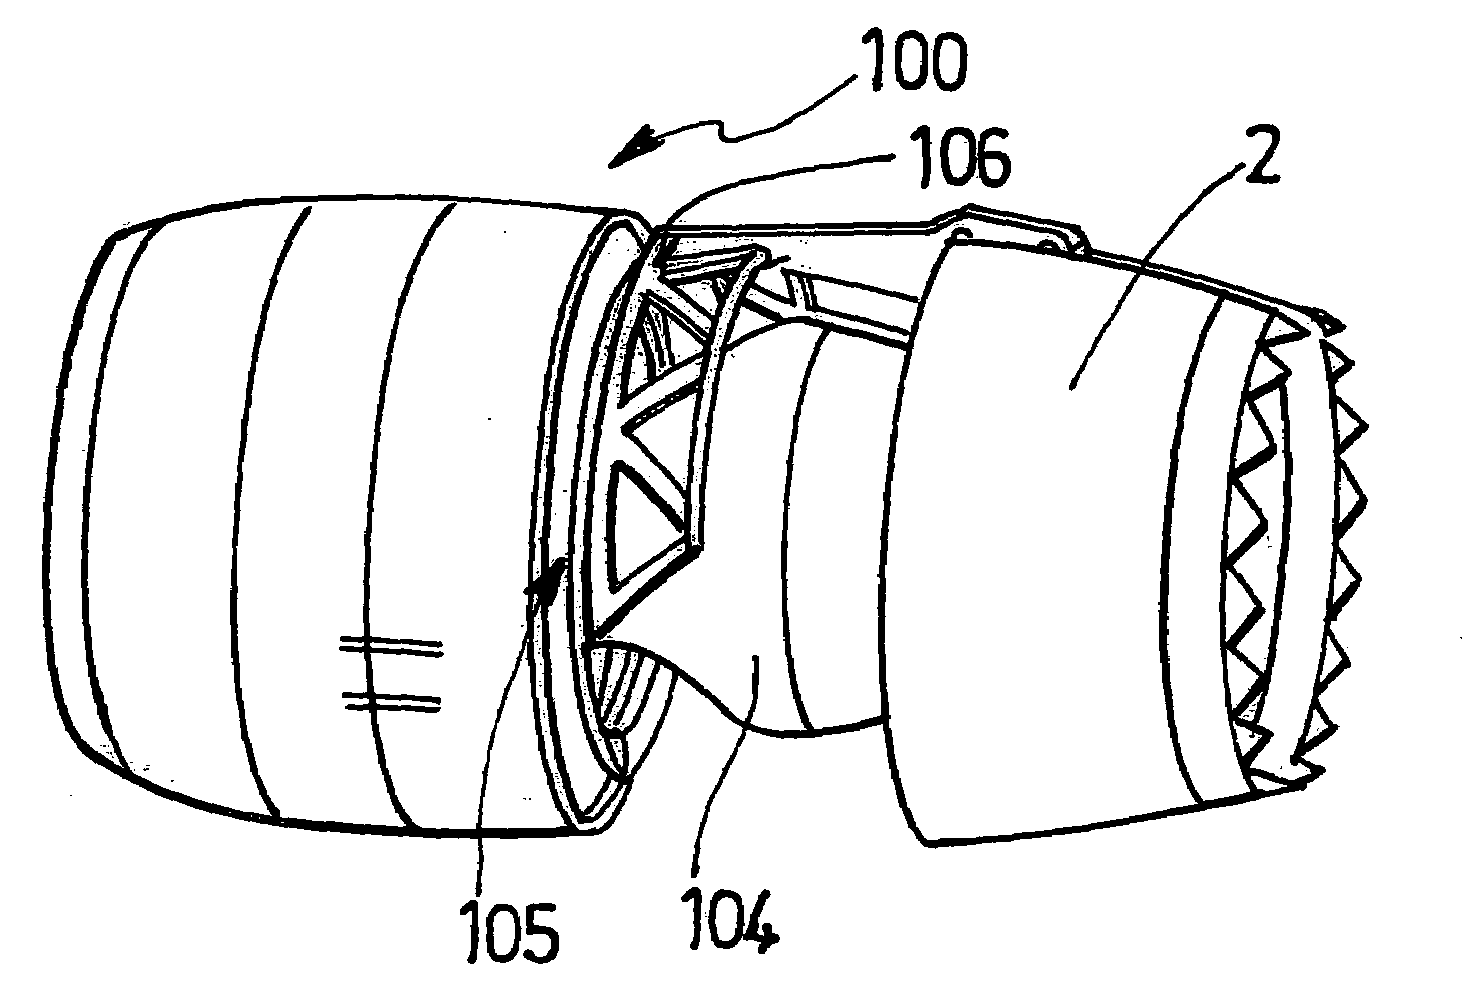 Translatable thrust inverter for jet engine